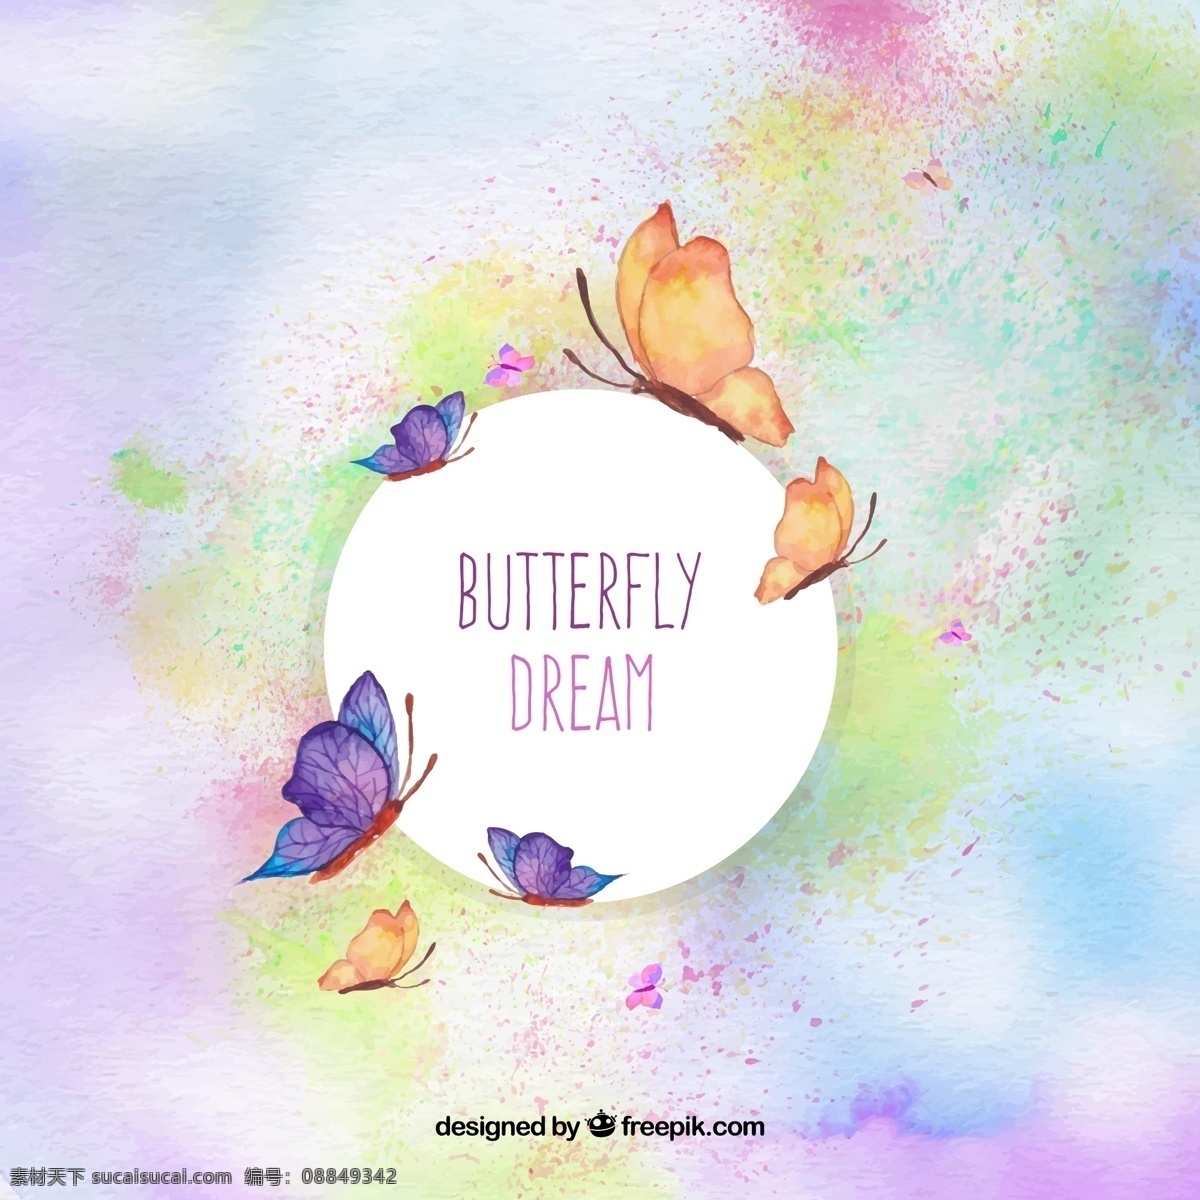 水彩 背景 彩色 蝴蝶 创意 元素 设计素材 创意设计 动物 小动物 卡通 可爱 矢量素材 背景素材